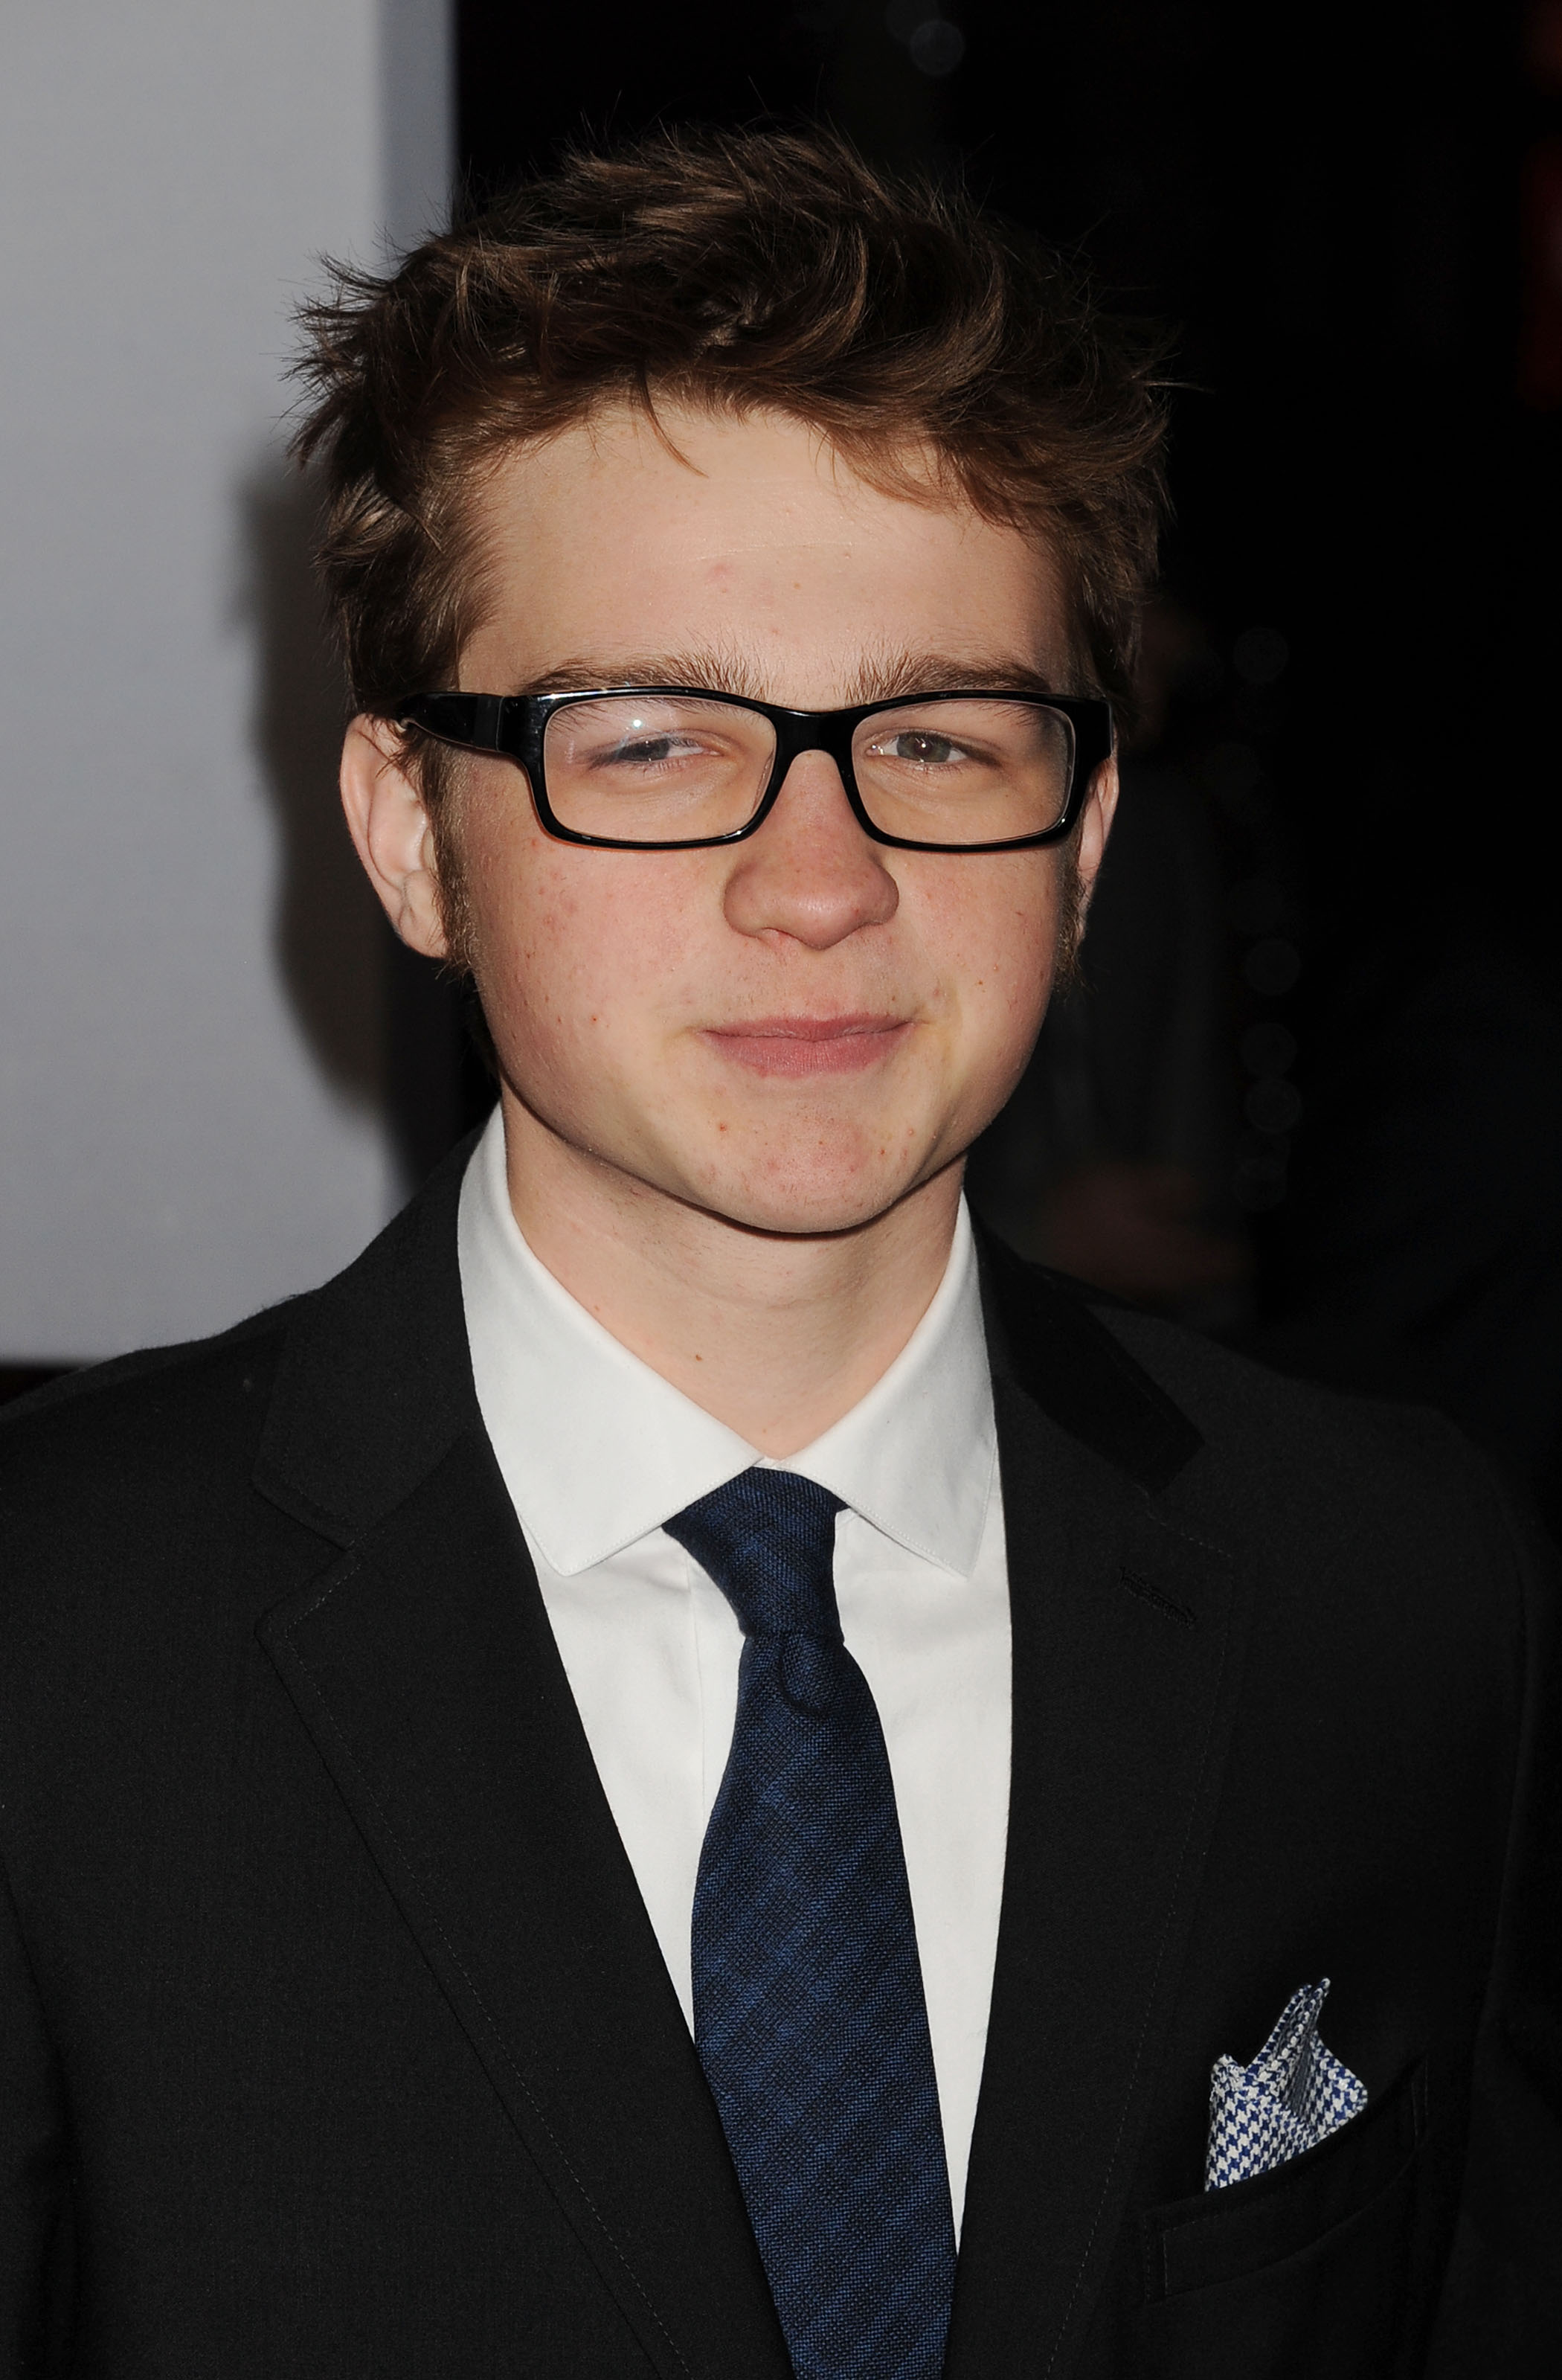 L'acteur lors des People's Choice Awards en 2012 à Los Angeles | Source : Getty Images